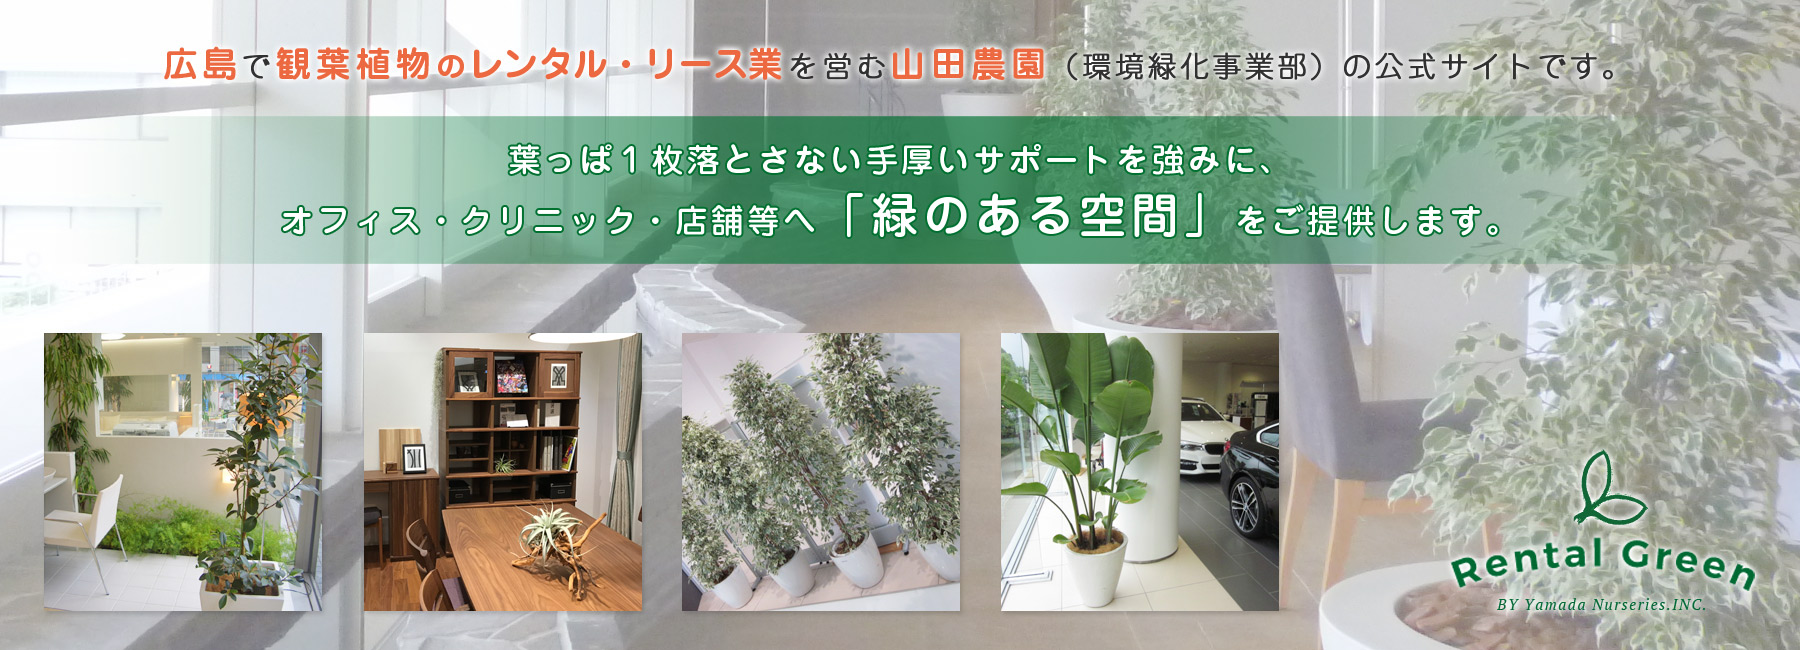  » マングーカズラ【広島で観葉植物レンタルのオススメ】